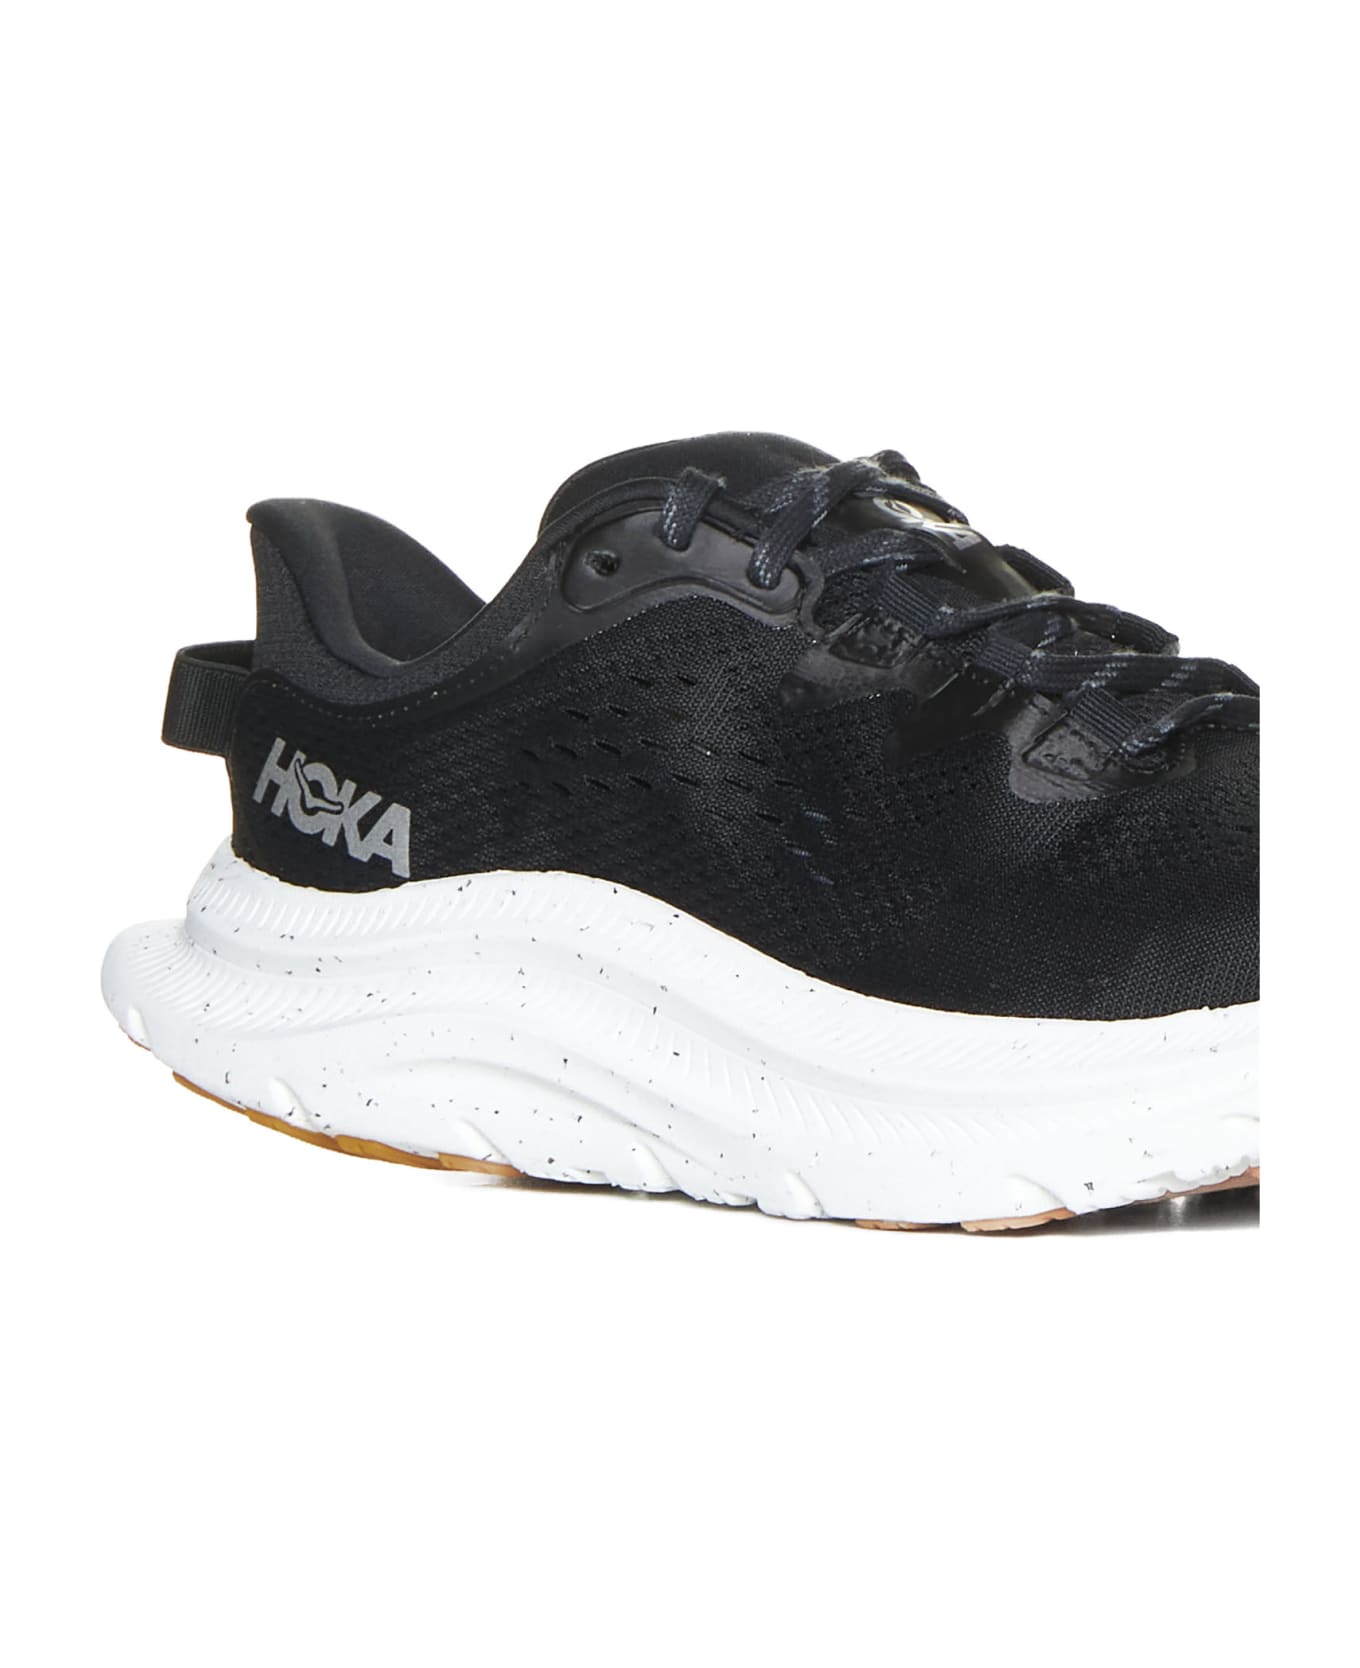 Hoka Sneakers - Black / white